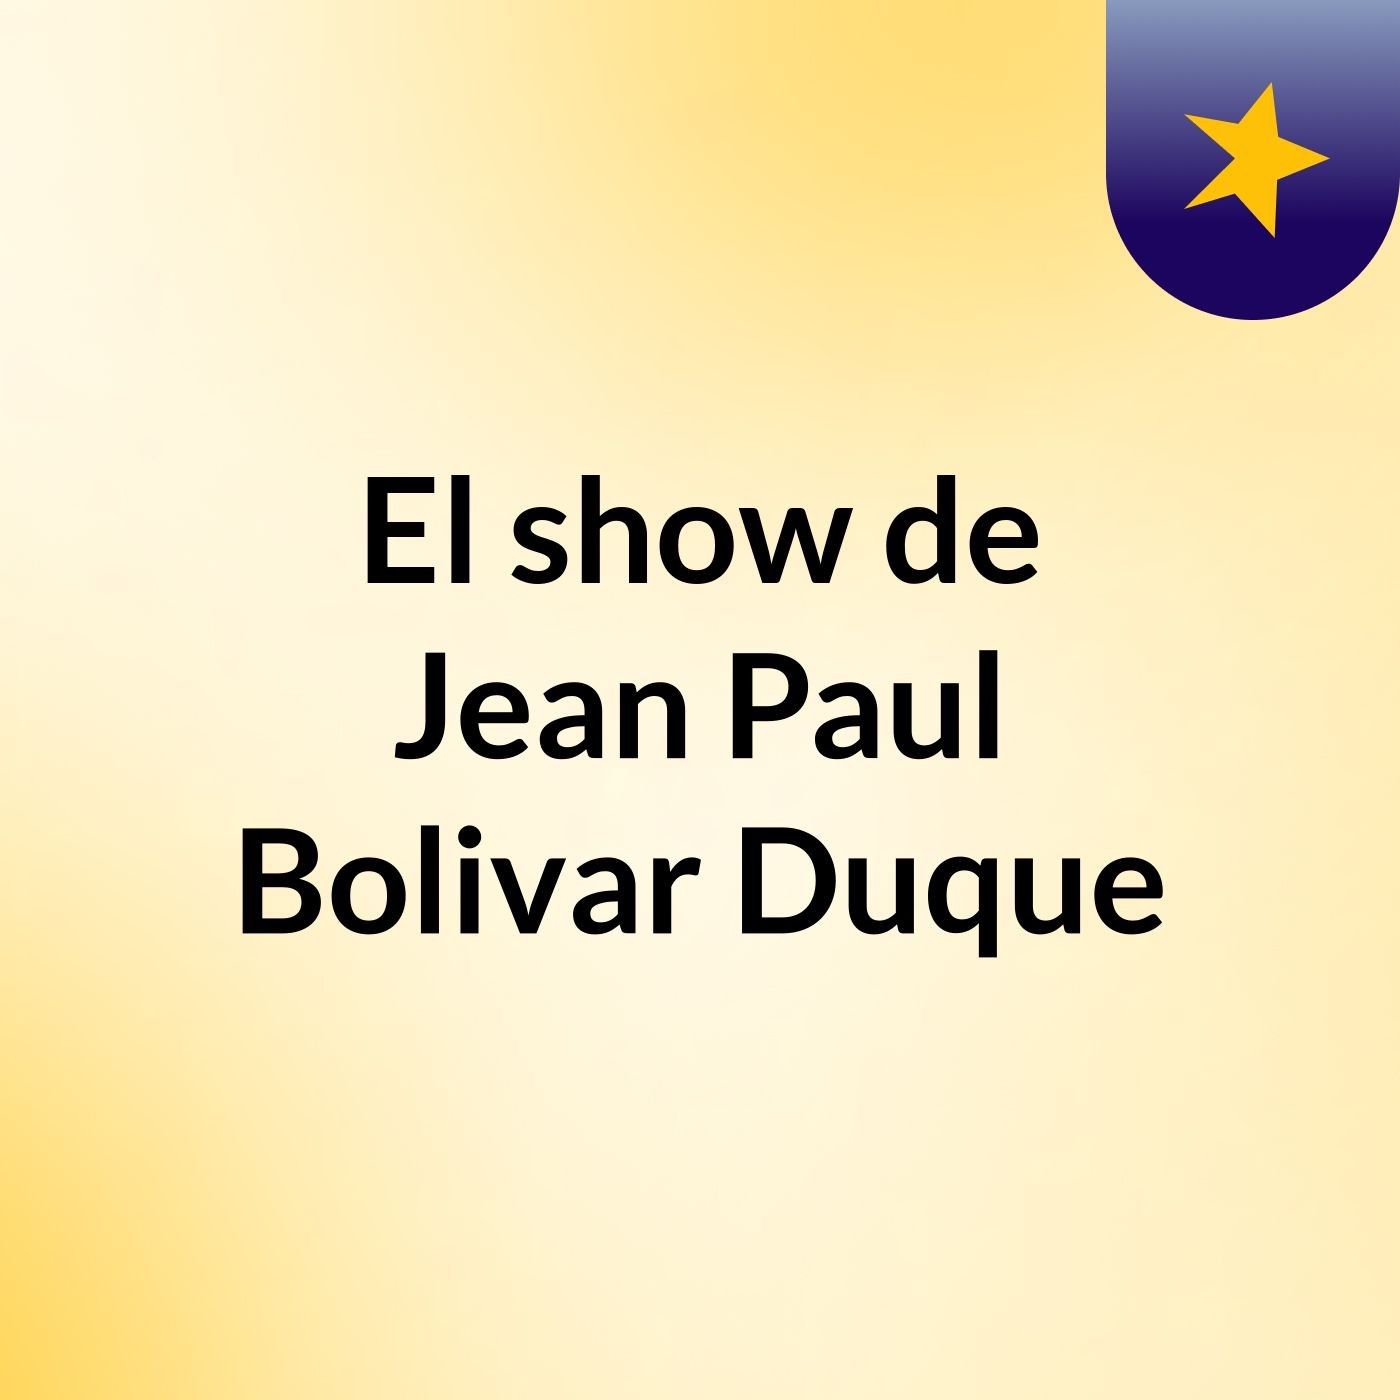 El show de Jean Paul Bolivar Duque